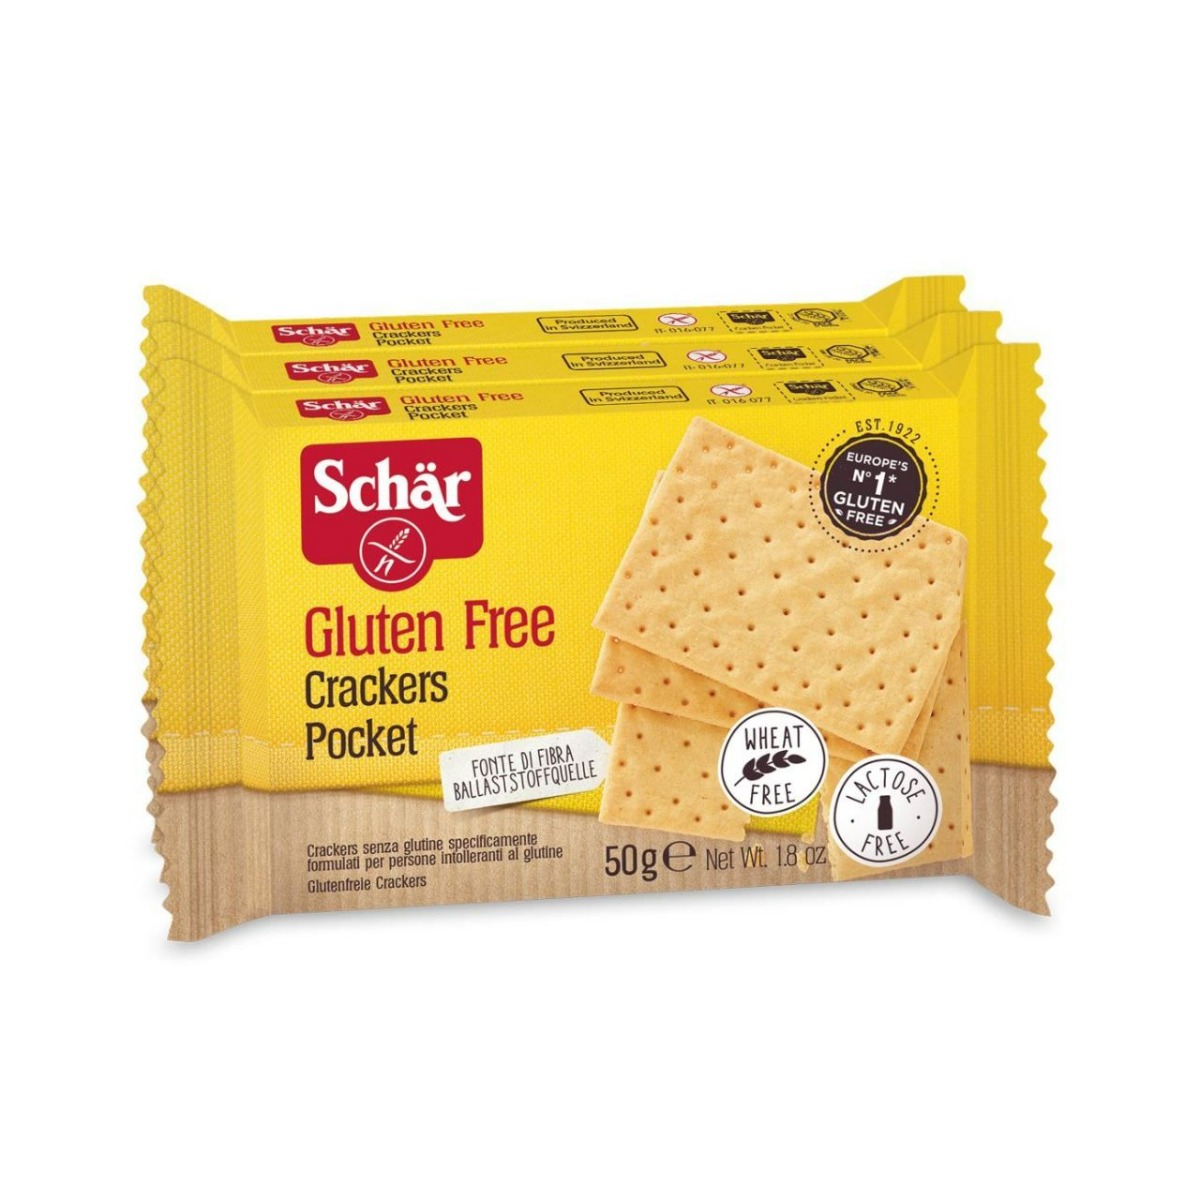 Biscuiti fara gluten Crackers Pocket, 150g, Schar